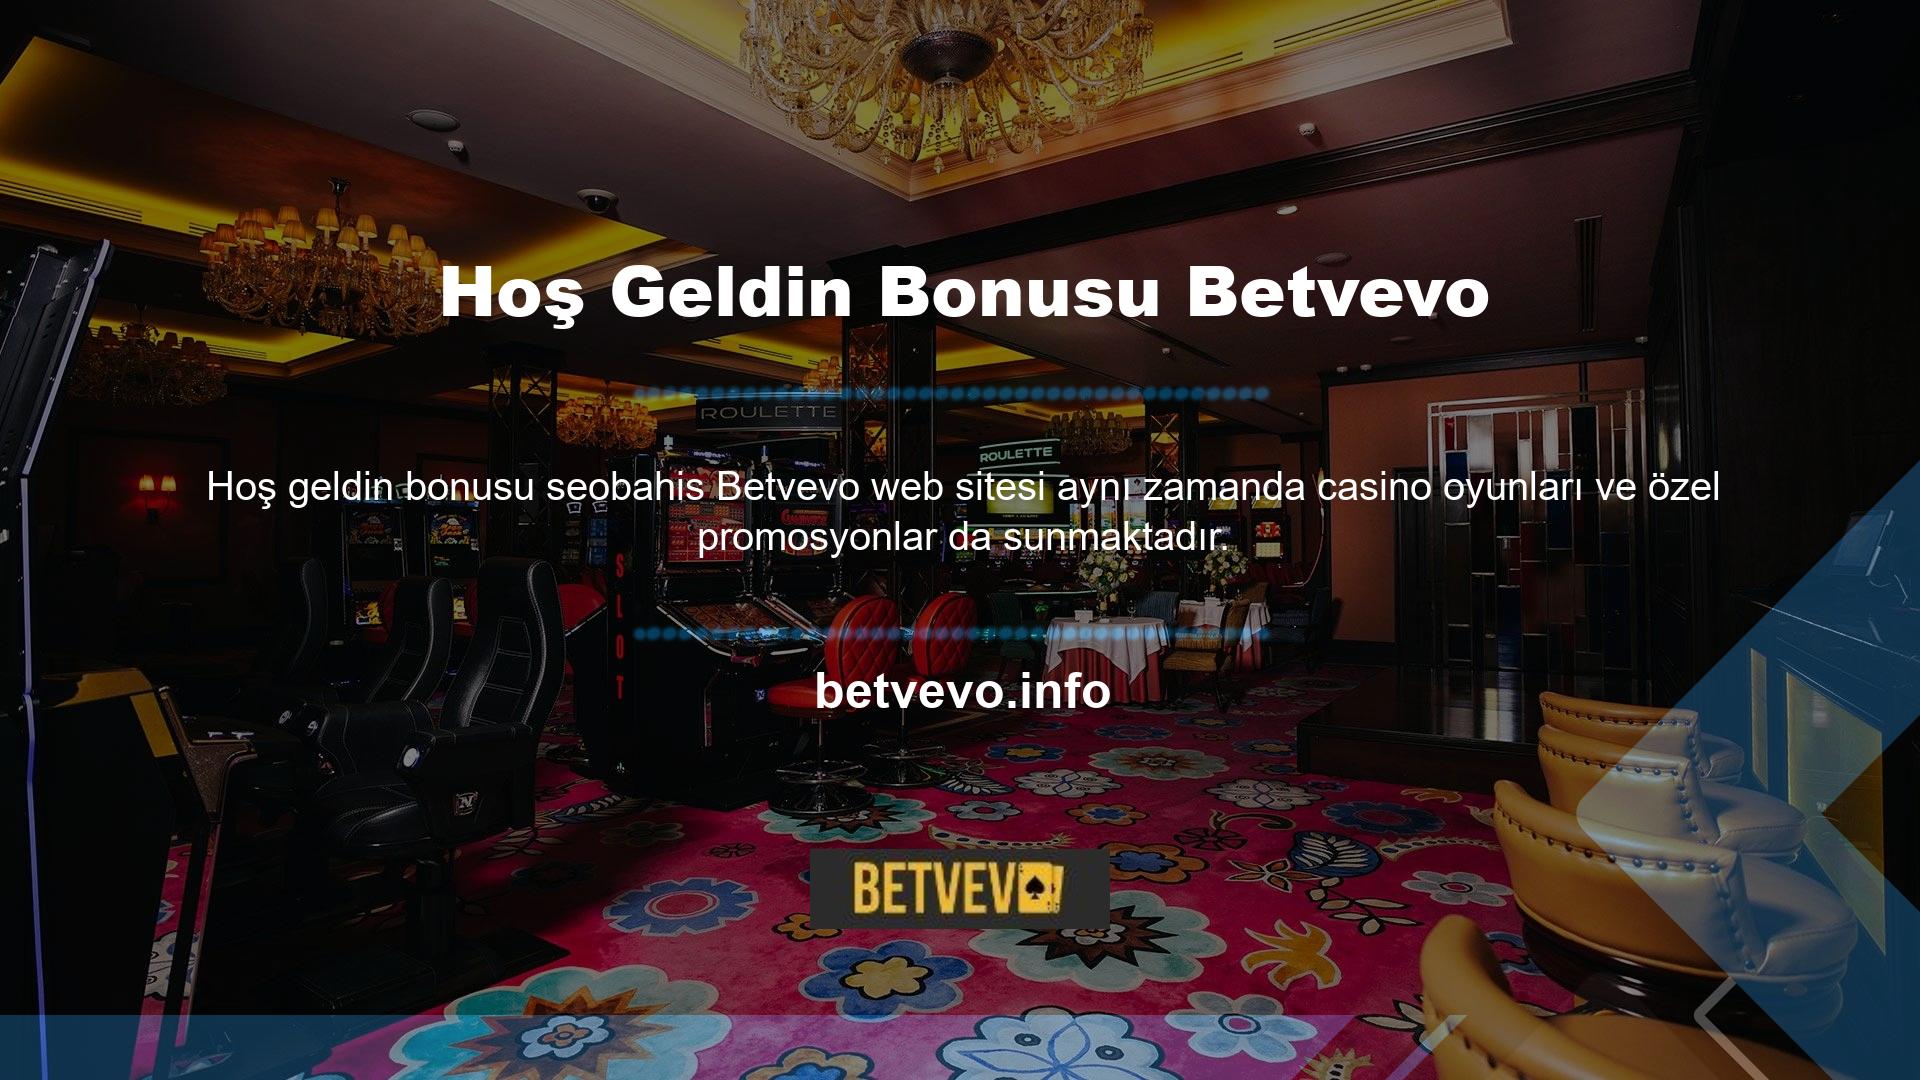 Betvevo ilk kez kaydolanlar Betvevo hoş geldin bonusu alacaklardır